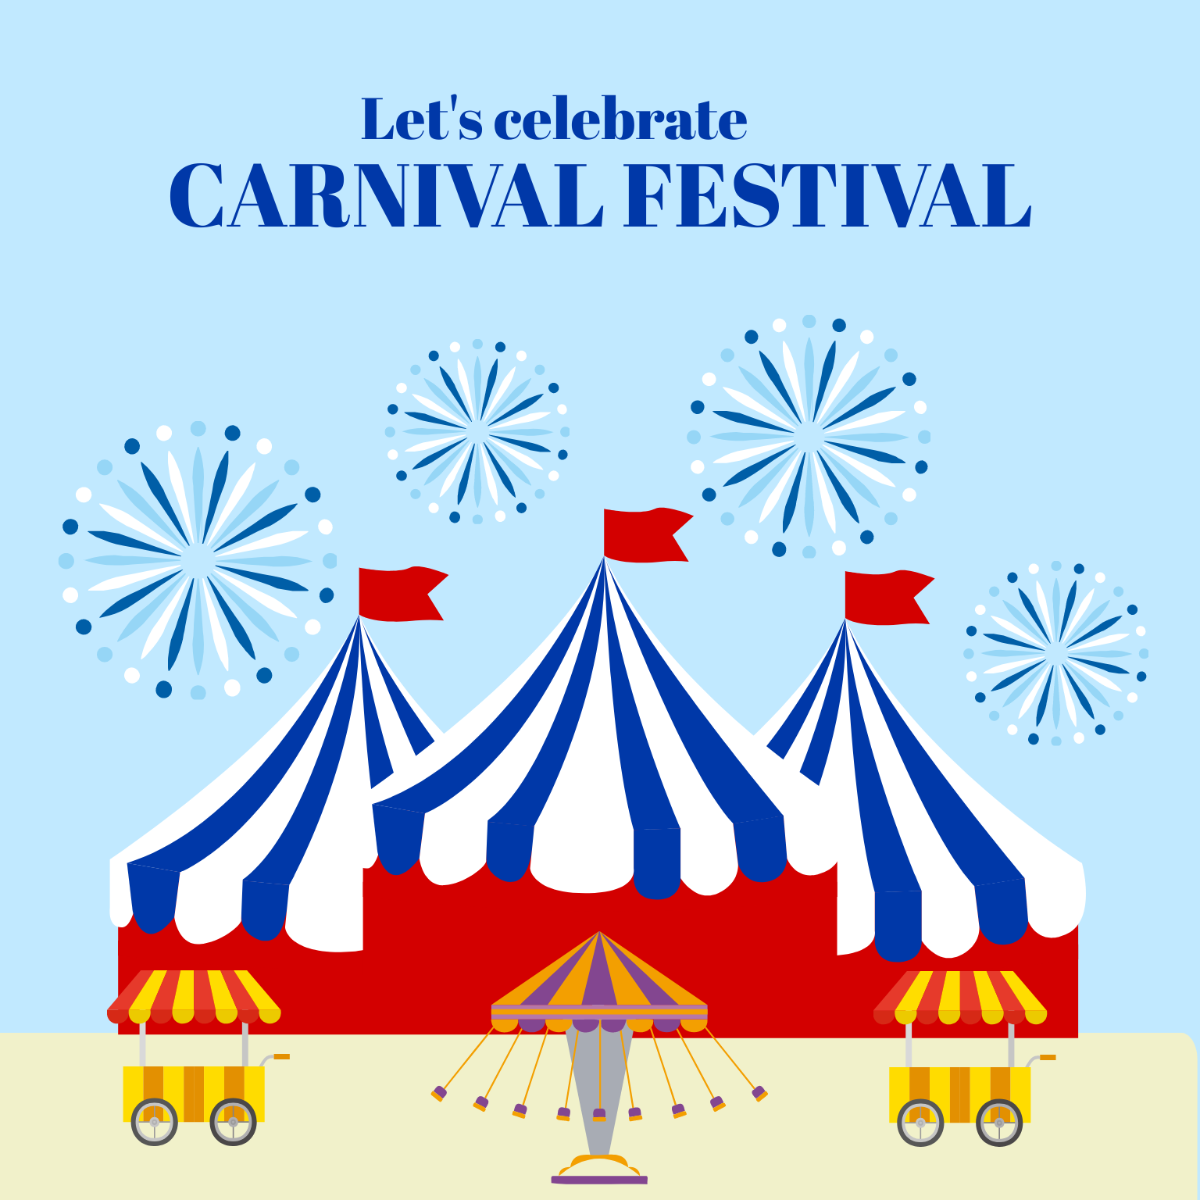 Carnival Festival Celebration Vector